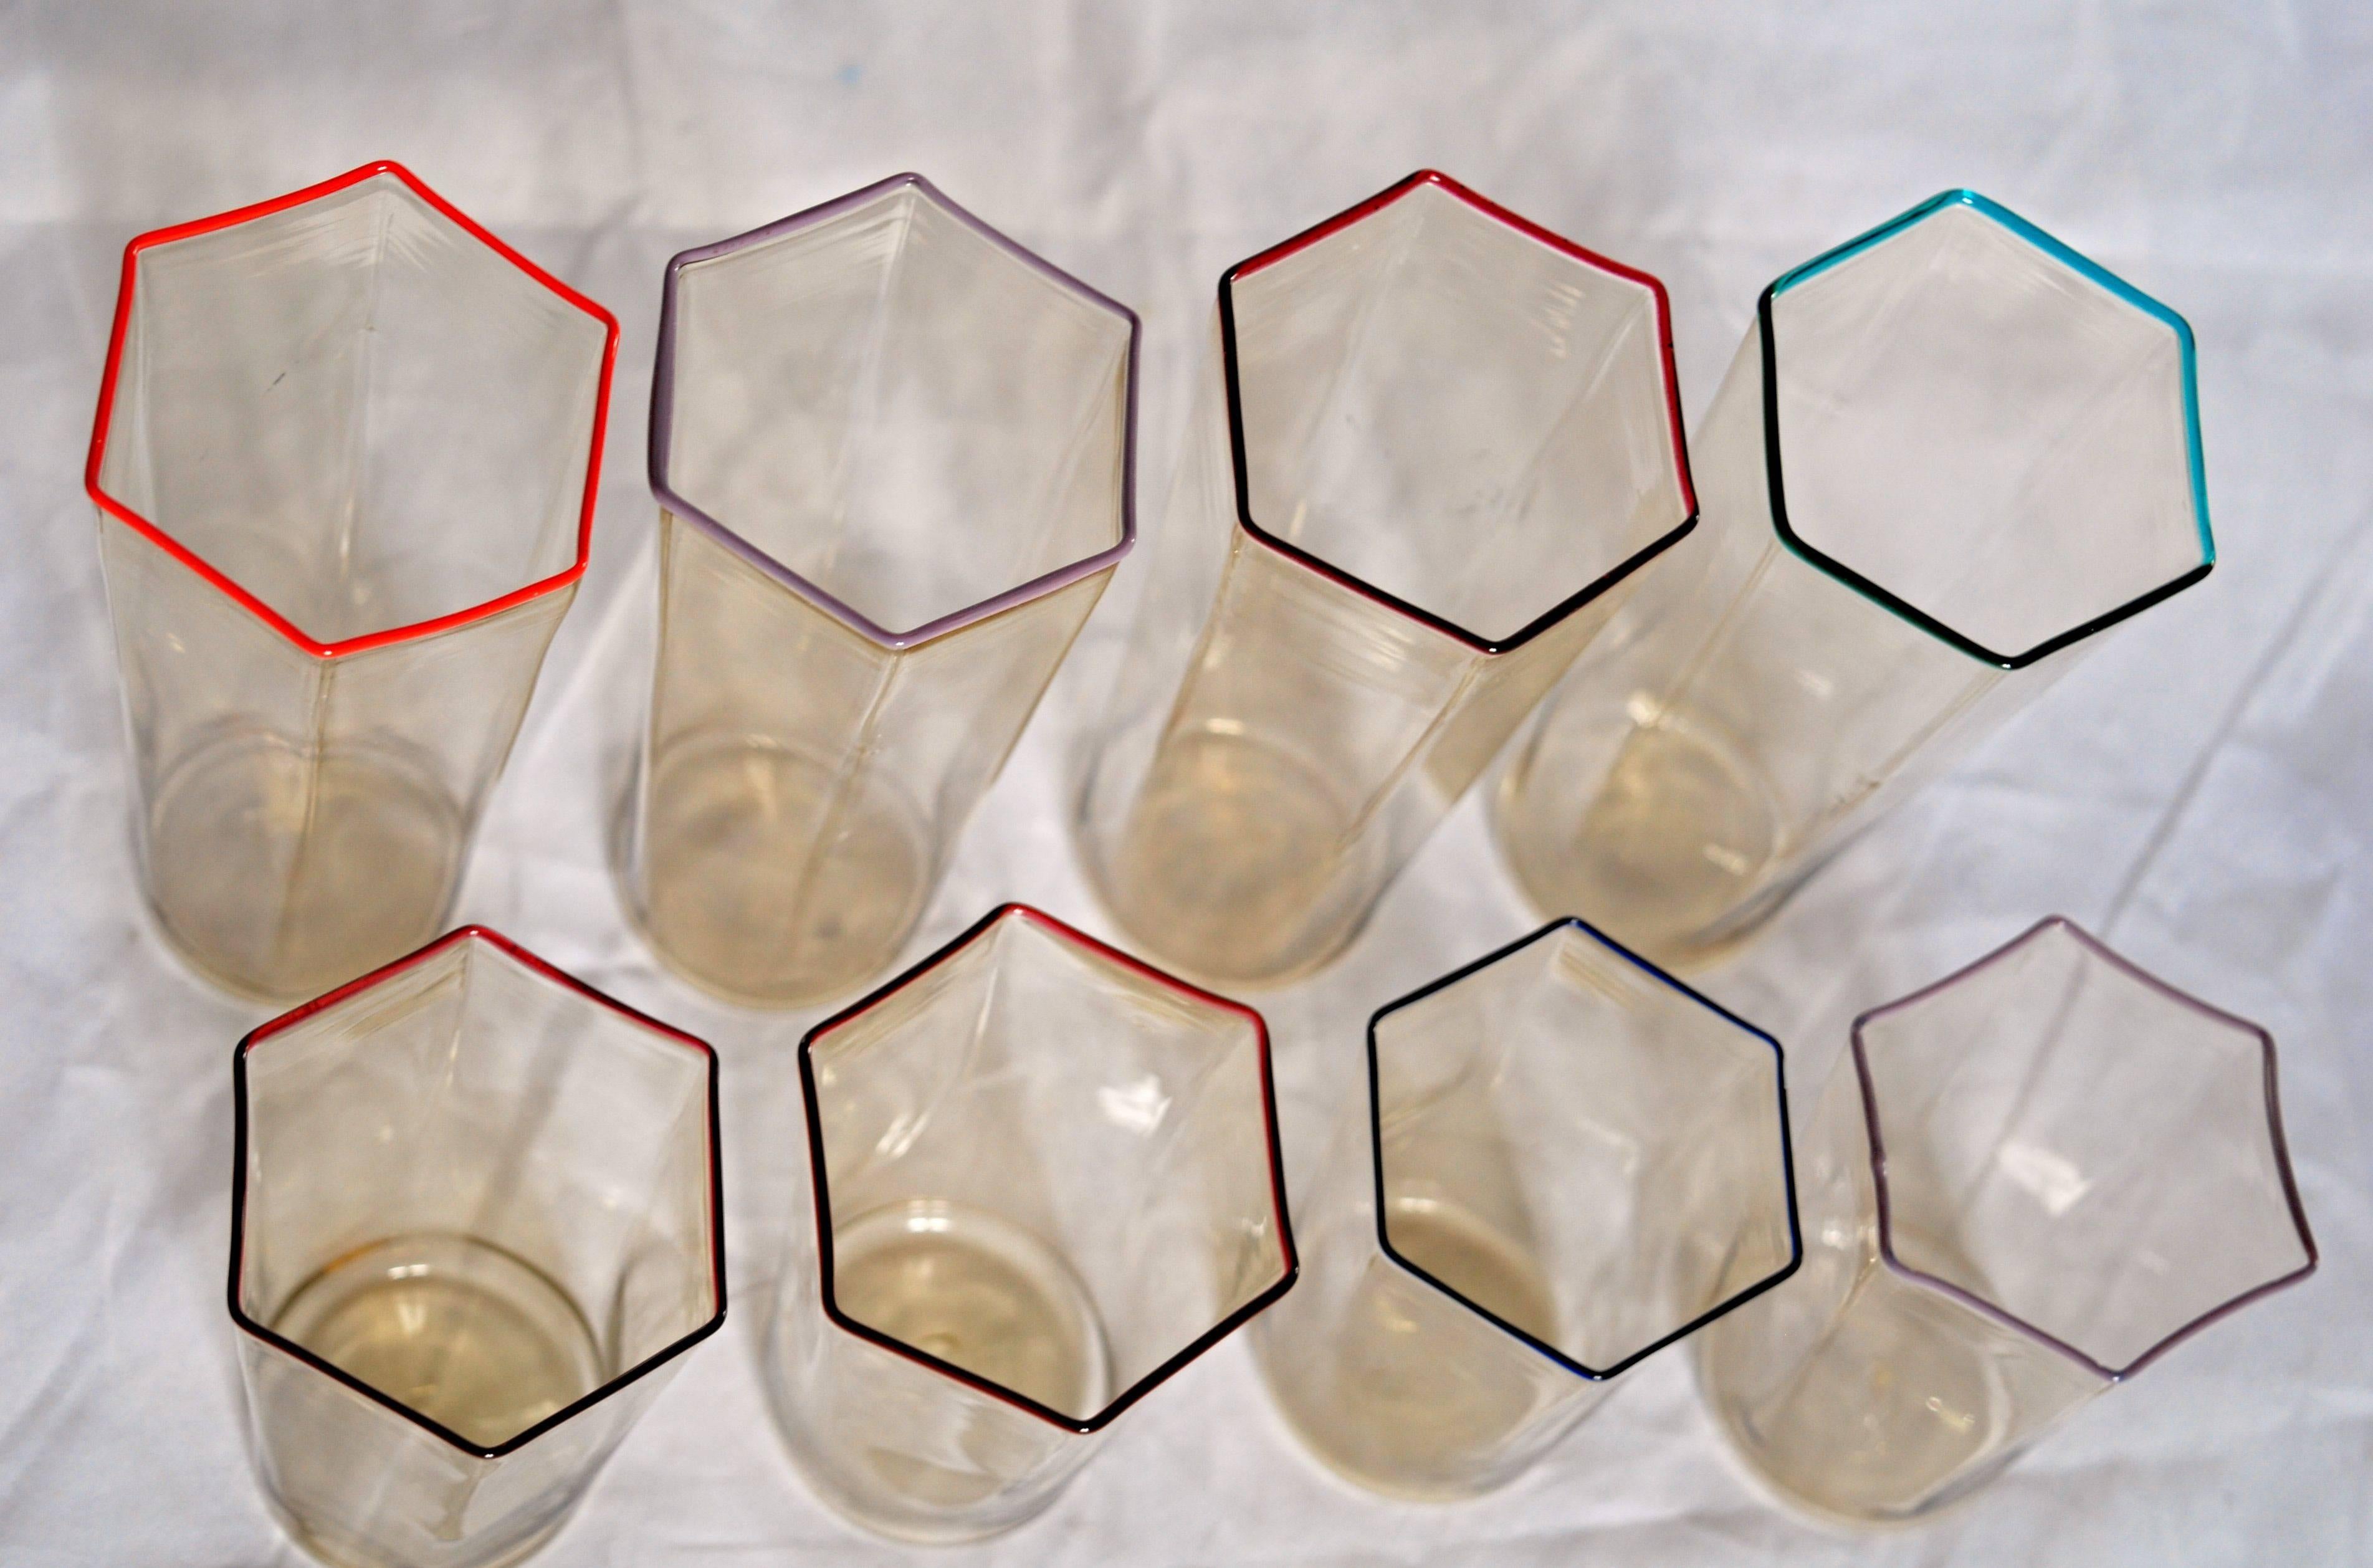 Eight Hexagonal Pagliesco Glasses, Multicolored Rim, Carlo Scarpa 1932 Design In Excellent Condition In Tavarnelle val di Pesa, Florence